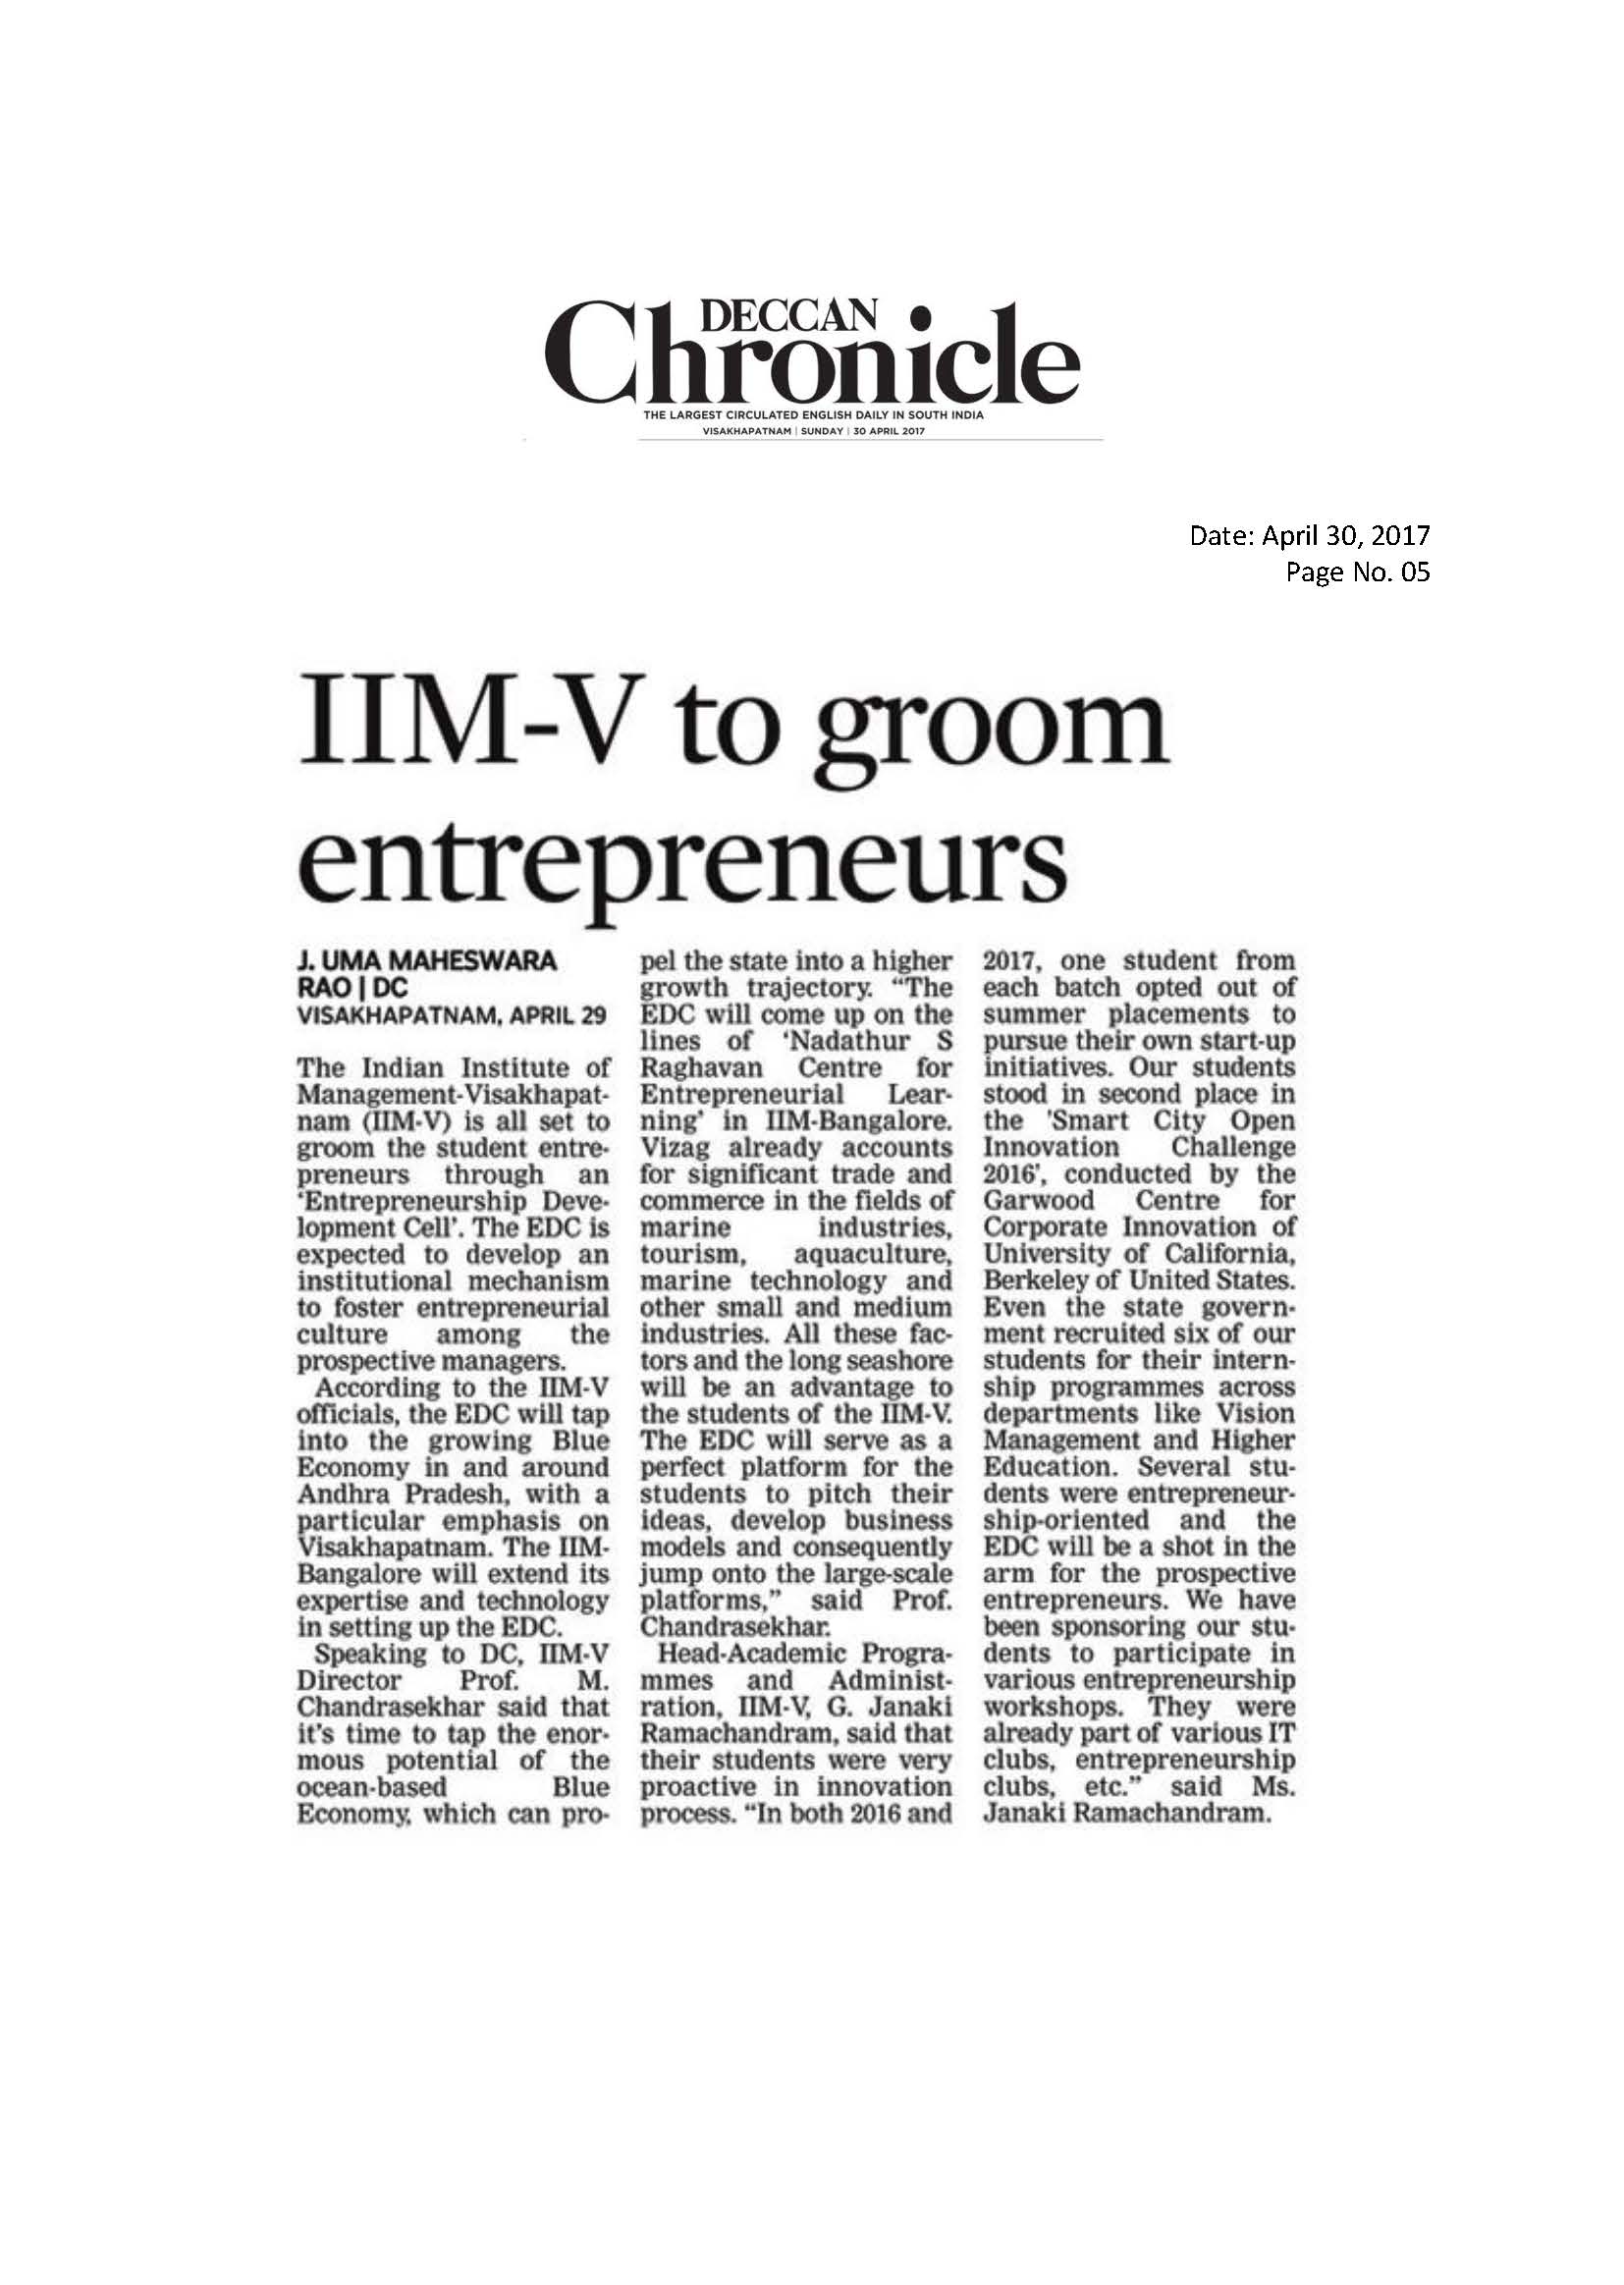 IIM-V to groom Entrepreneurs - 30.04.2017